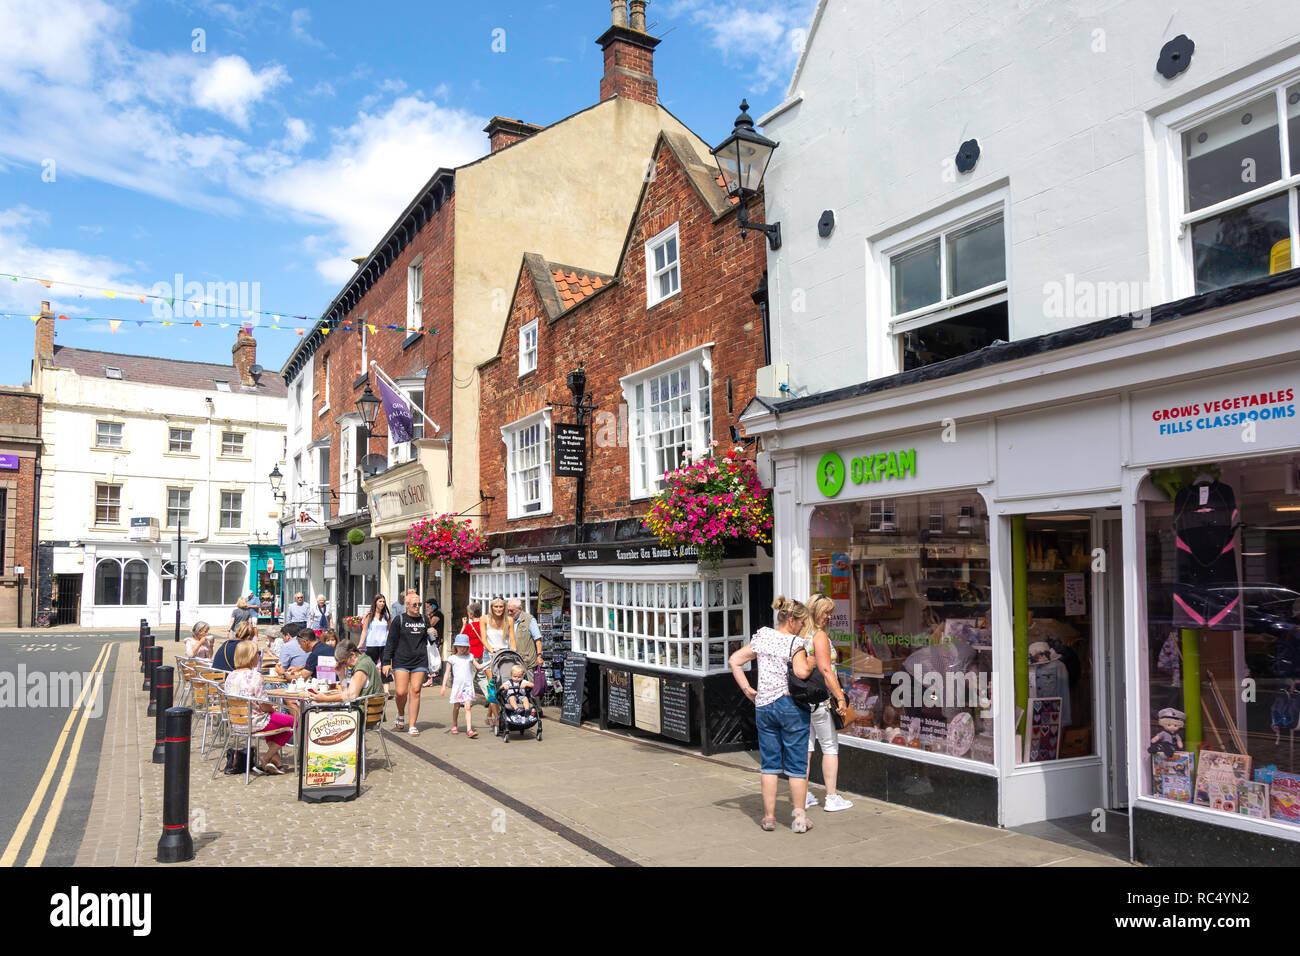 Street cafe, Market Place, Knaresborough, North Yorkshire, England, United Kingdom Stock Photo